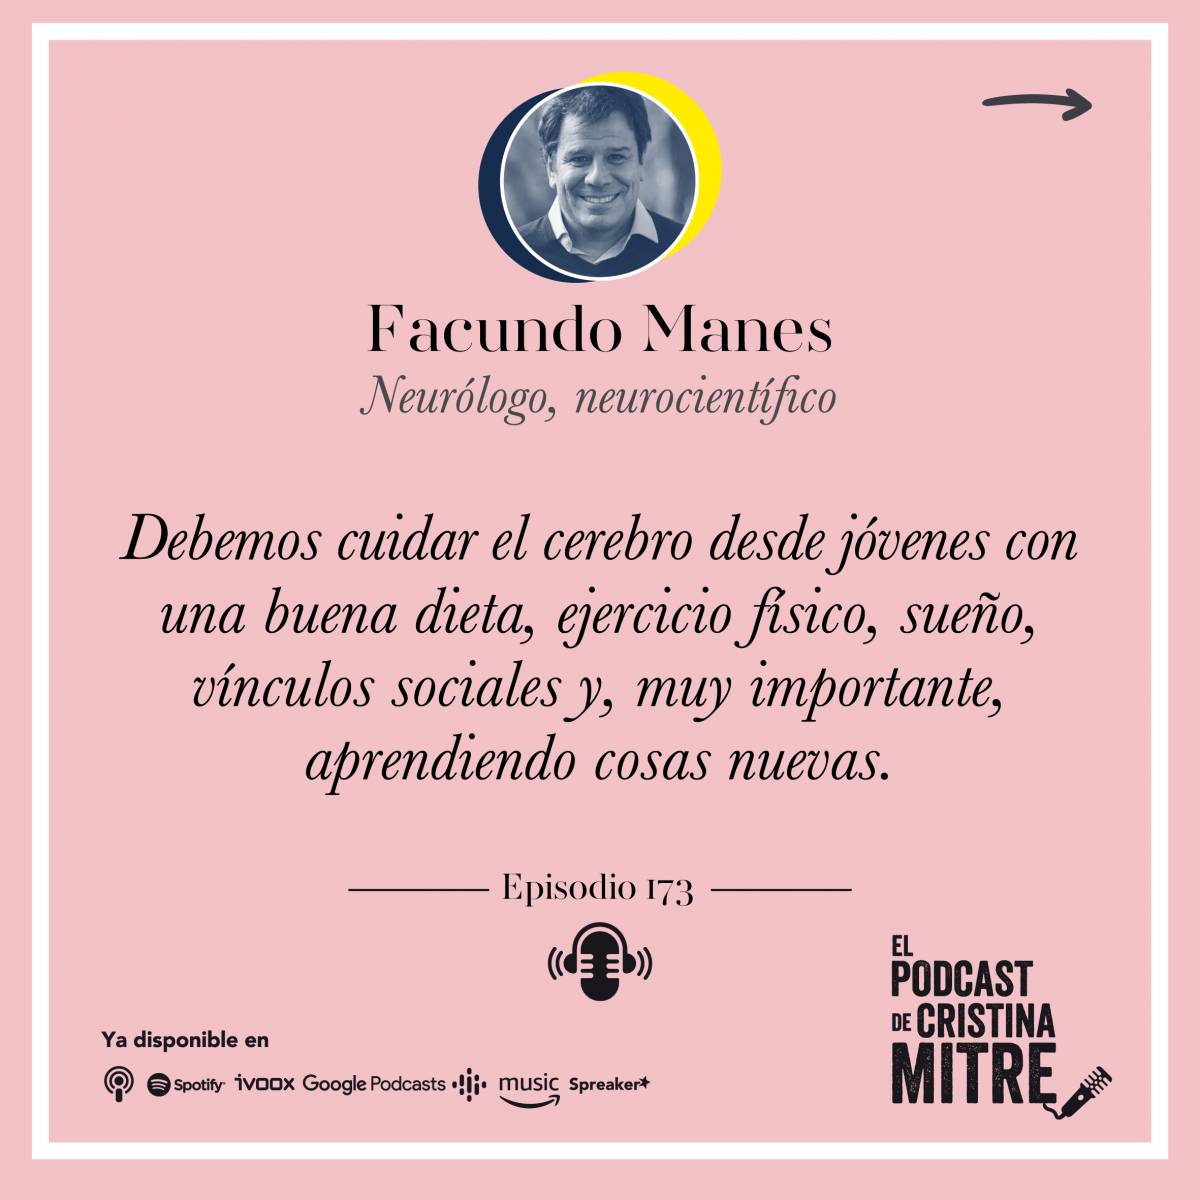 Cuidar el Cerebro bienestar Cristina Mitre Facundo Manes